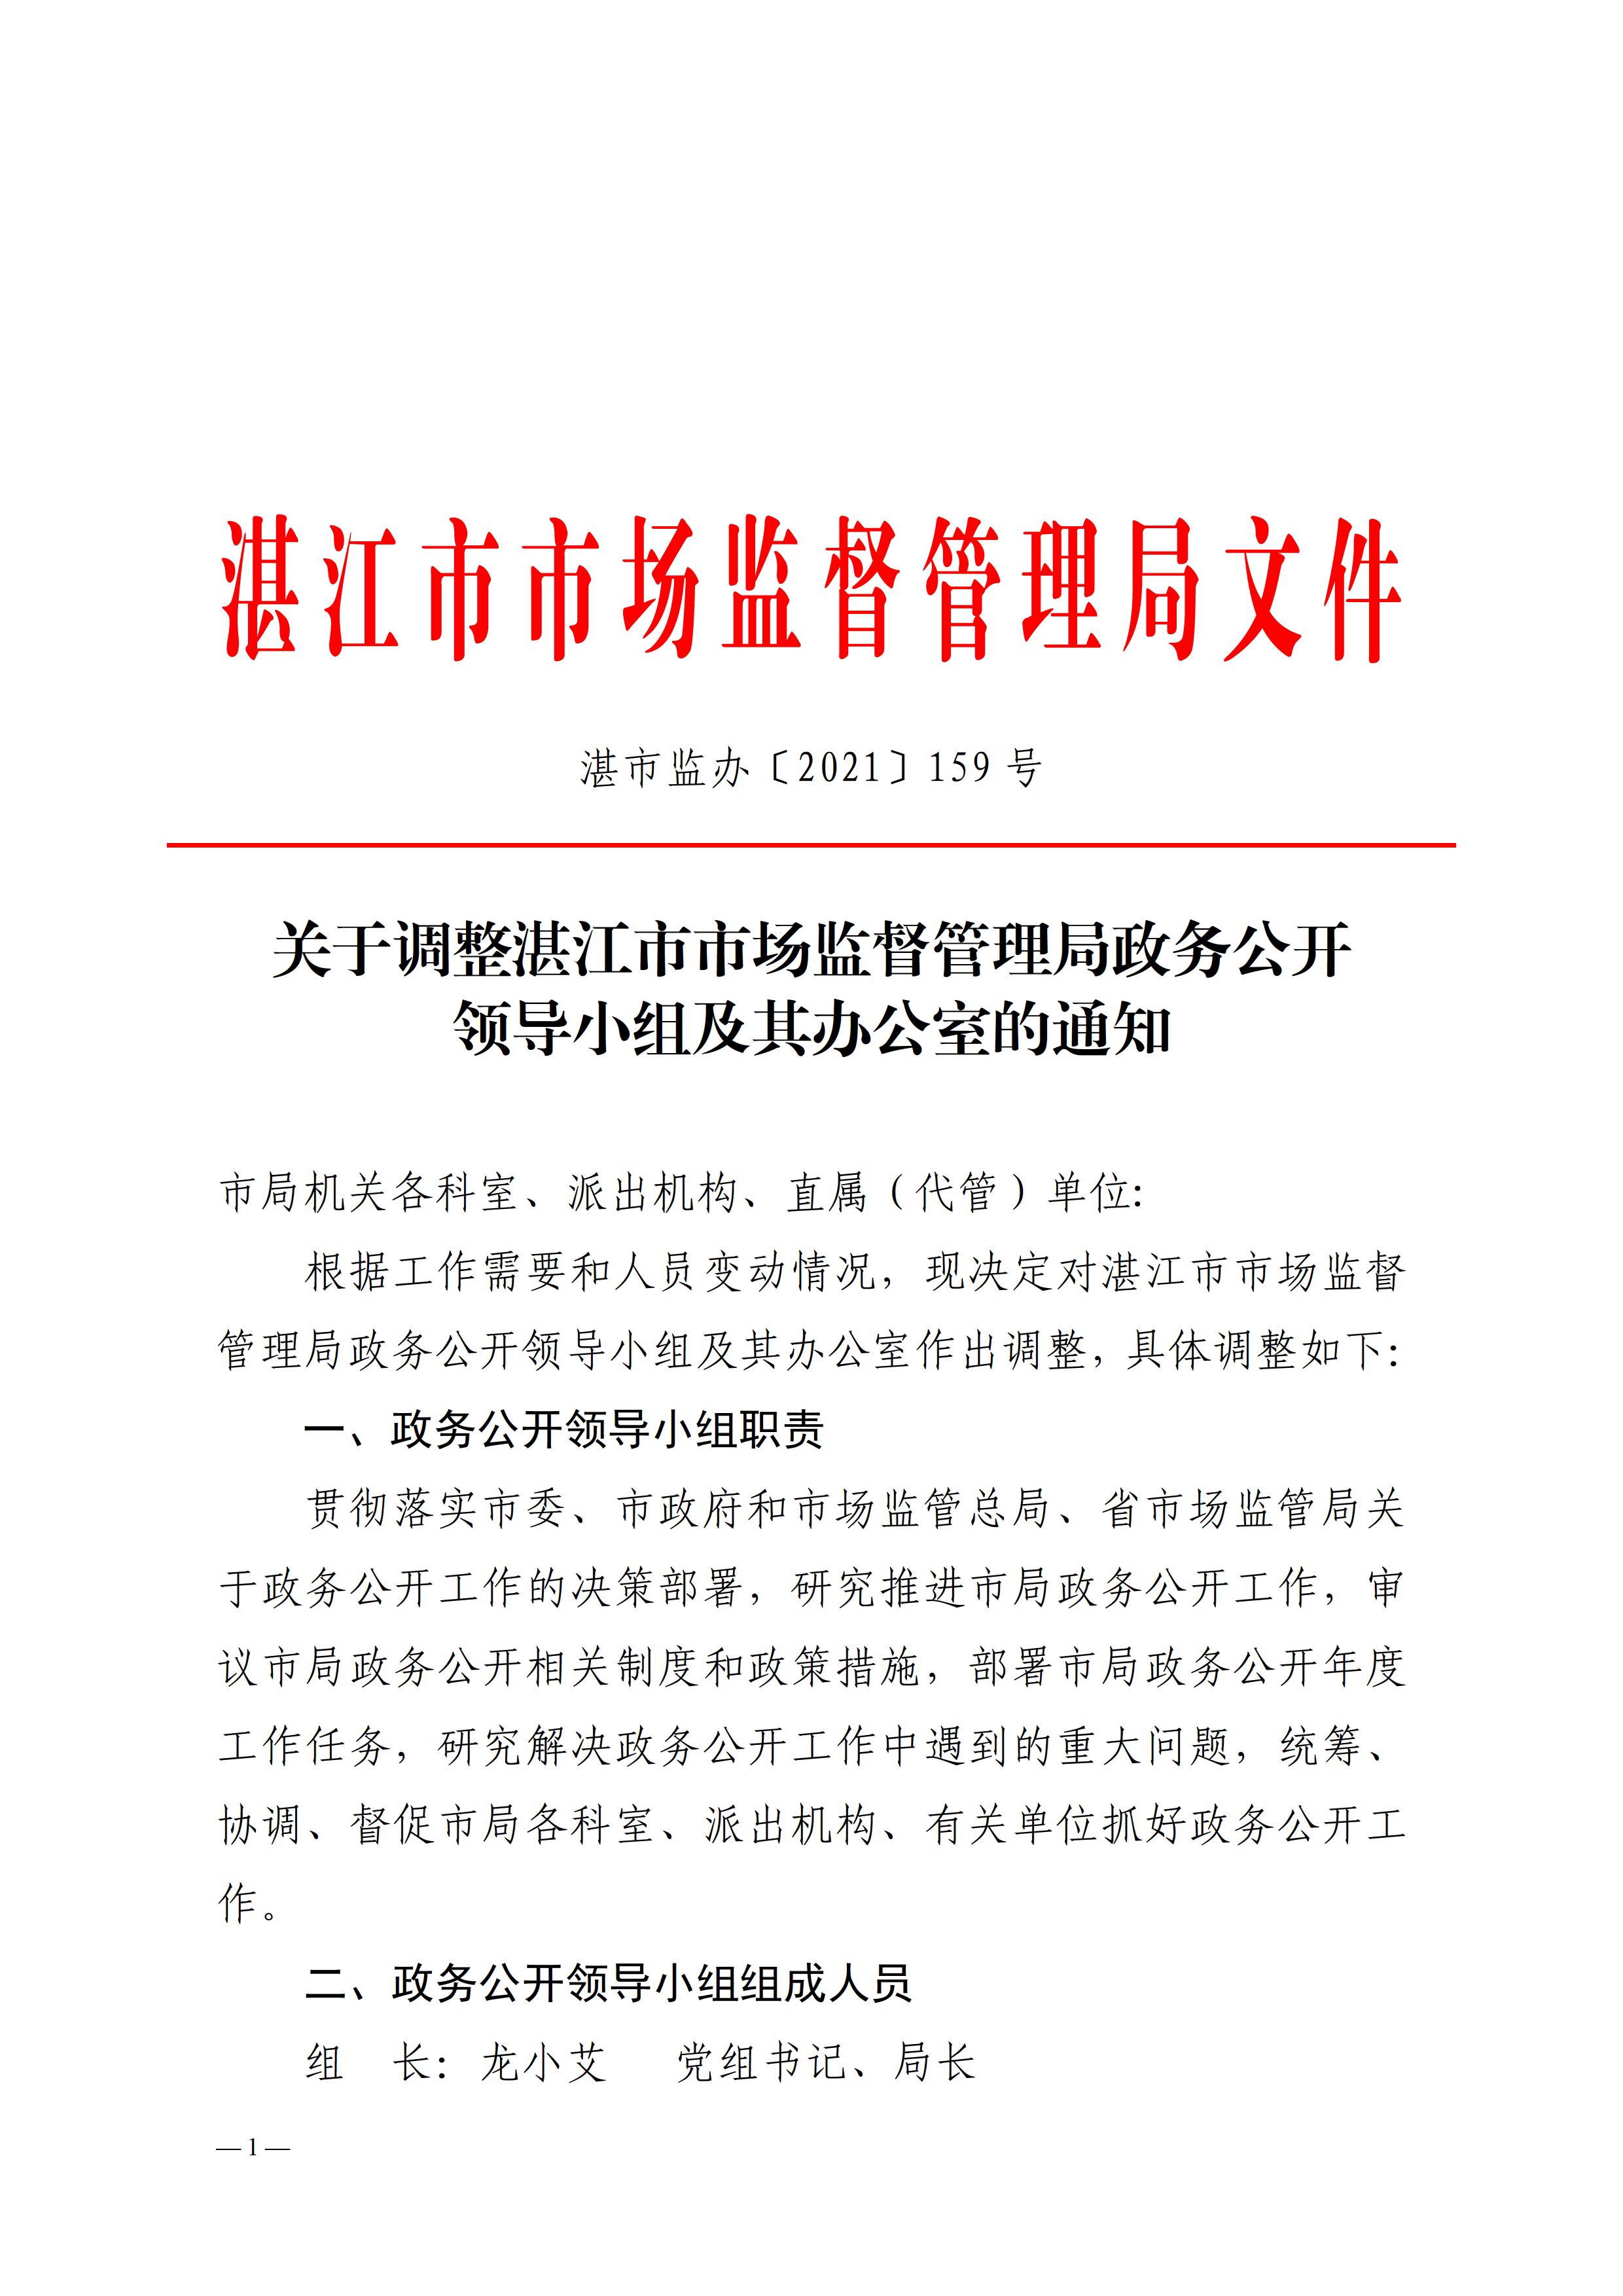 6、关于调整湛江市市场监督管理局政务公开领导小组及其办公室的通知 - 0001.jpg